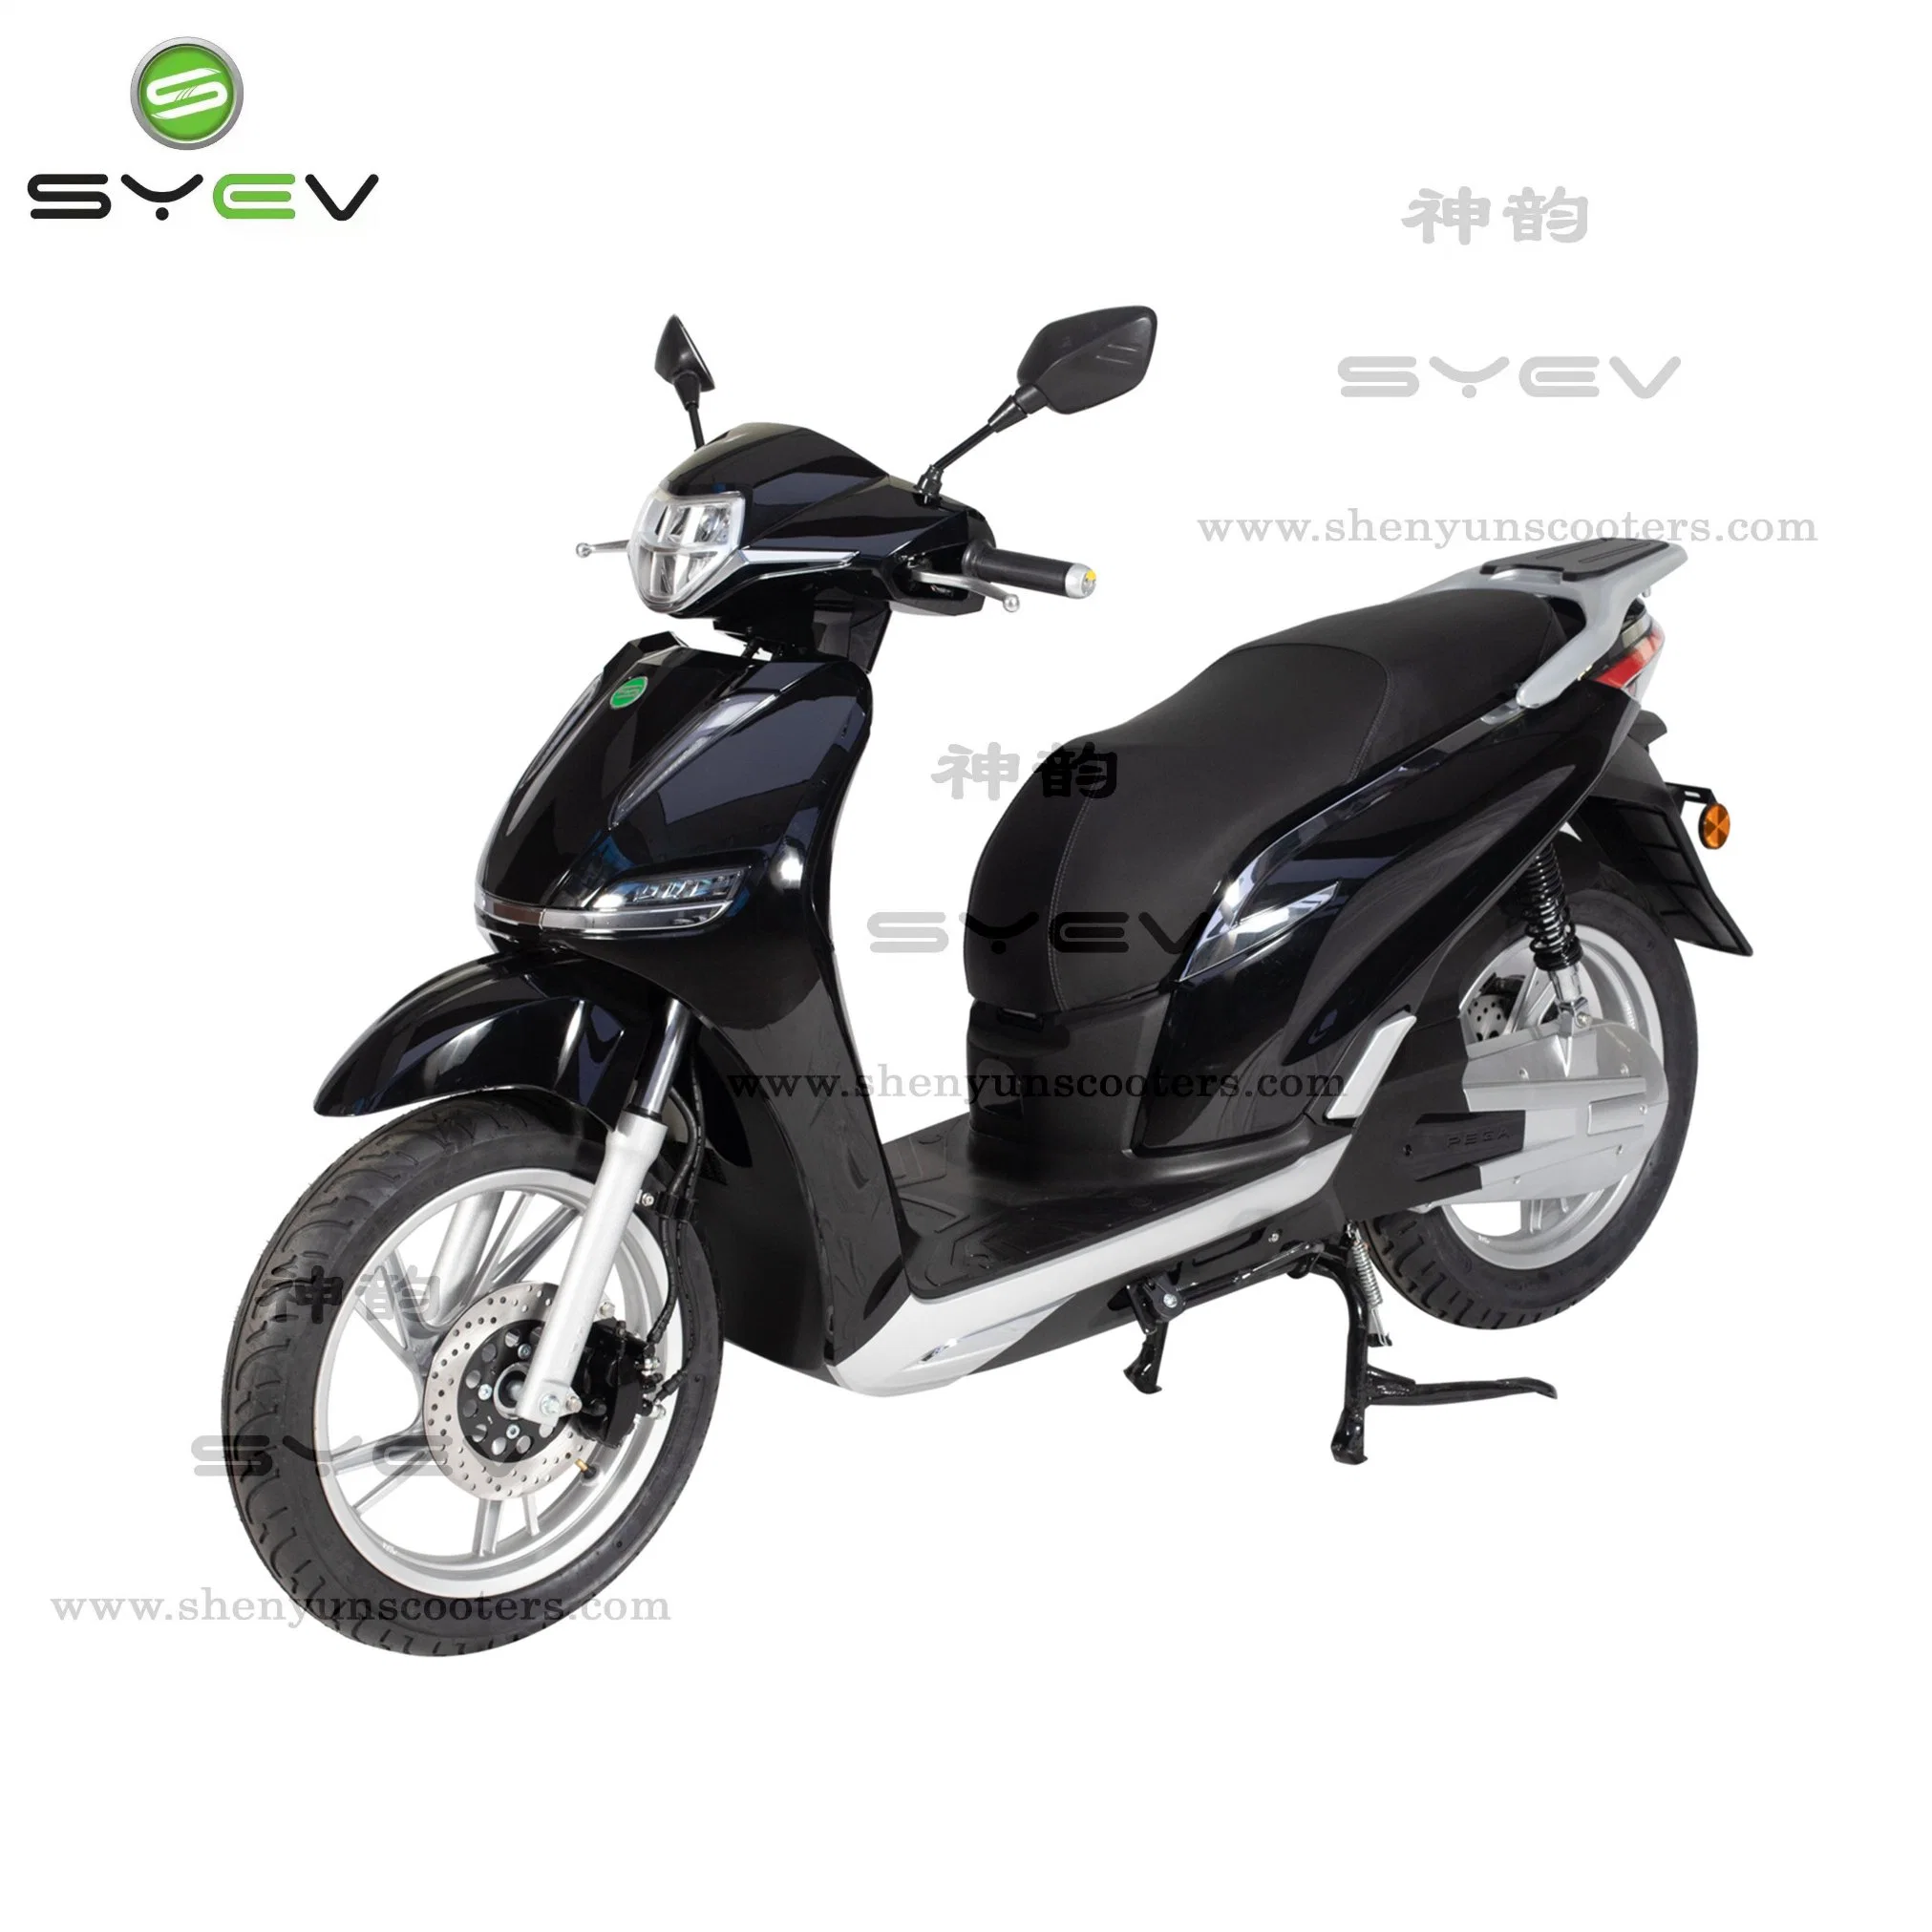 Syev Cool Design Electric Motorcycle 3kw moteur puissant de longue portée 145km 80km/h